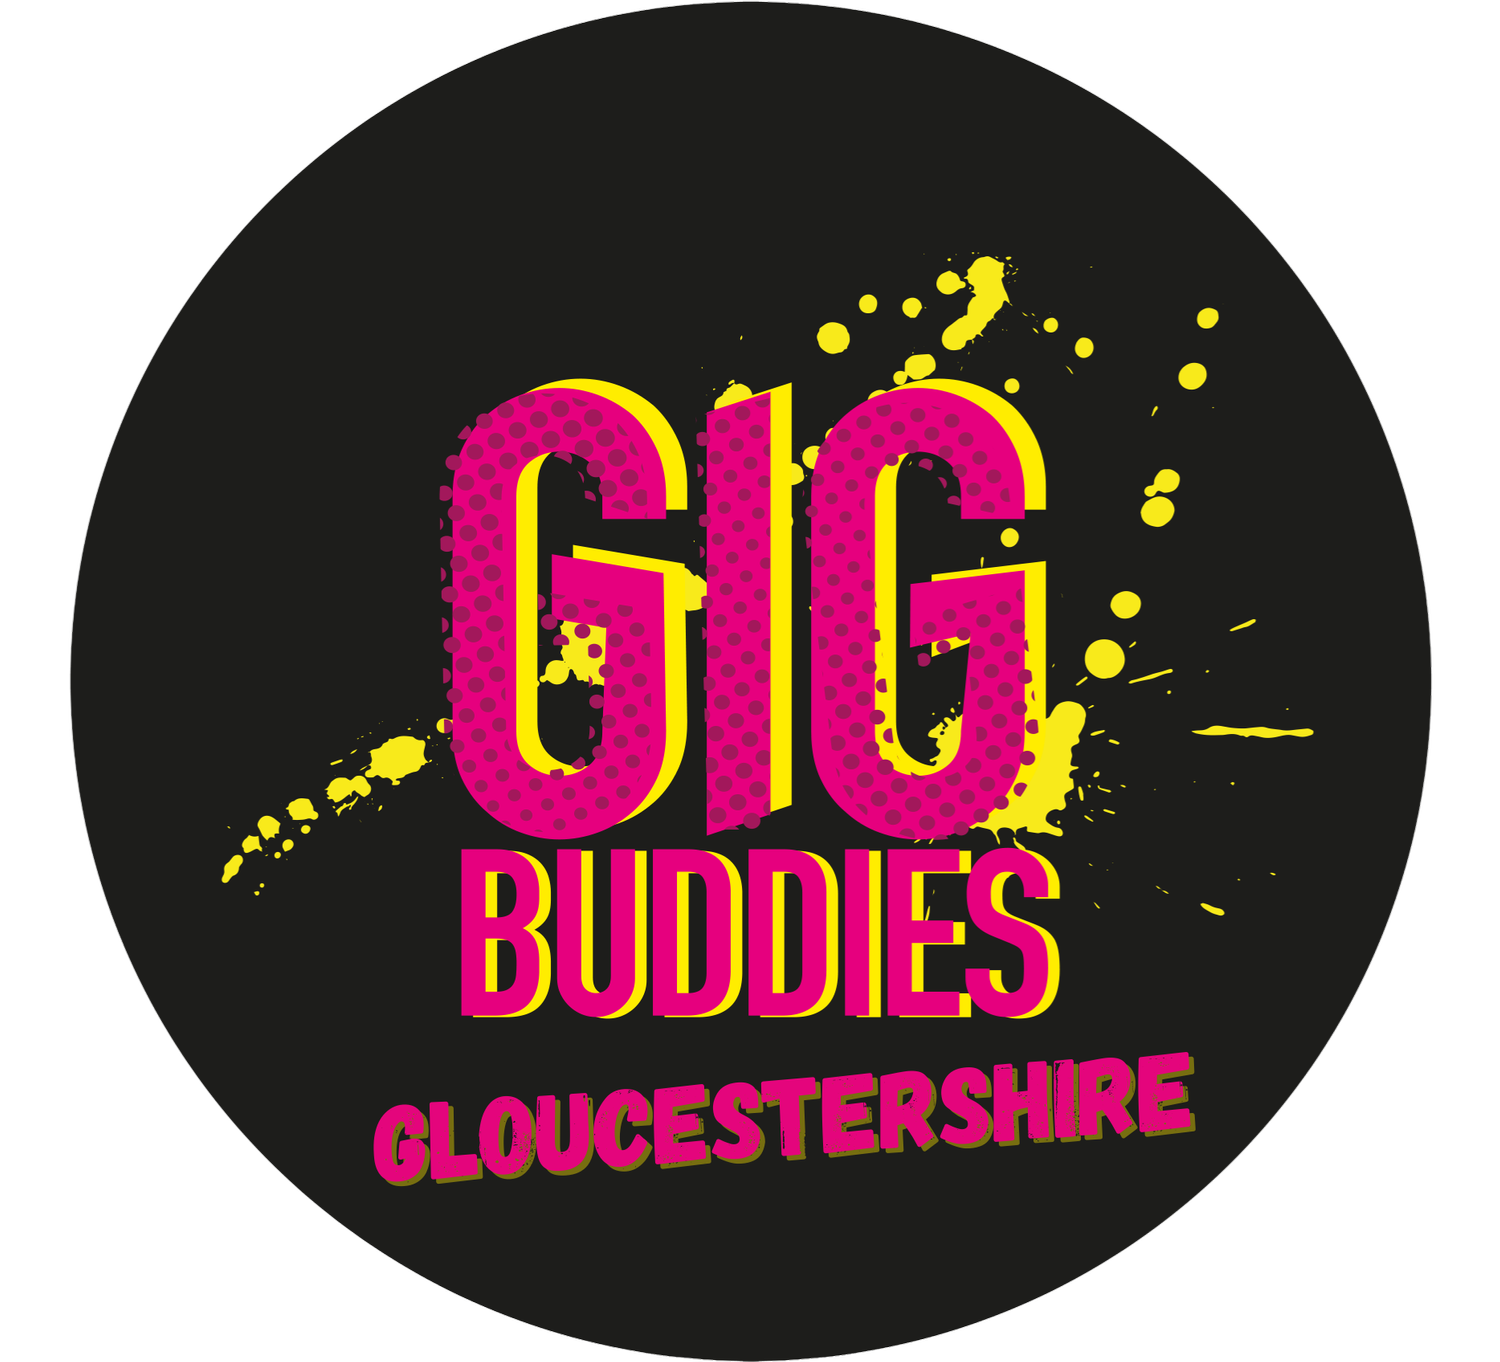 Gig Buddies Gloucestershire